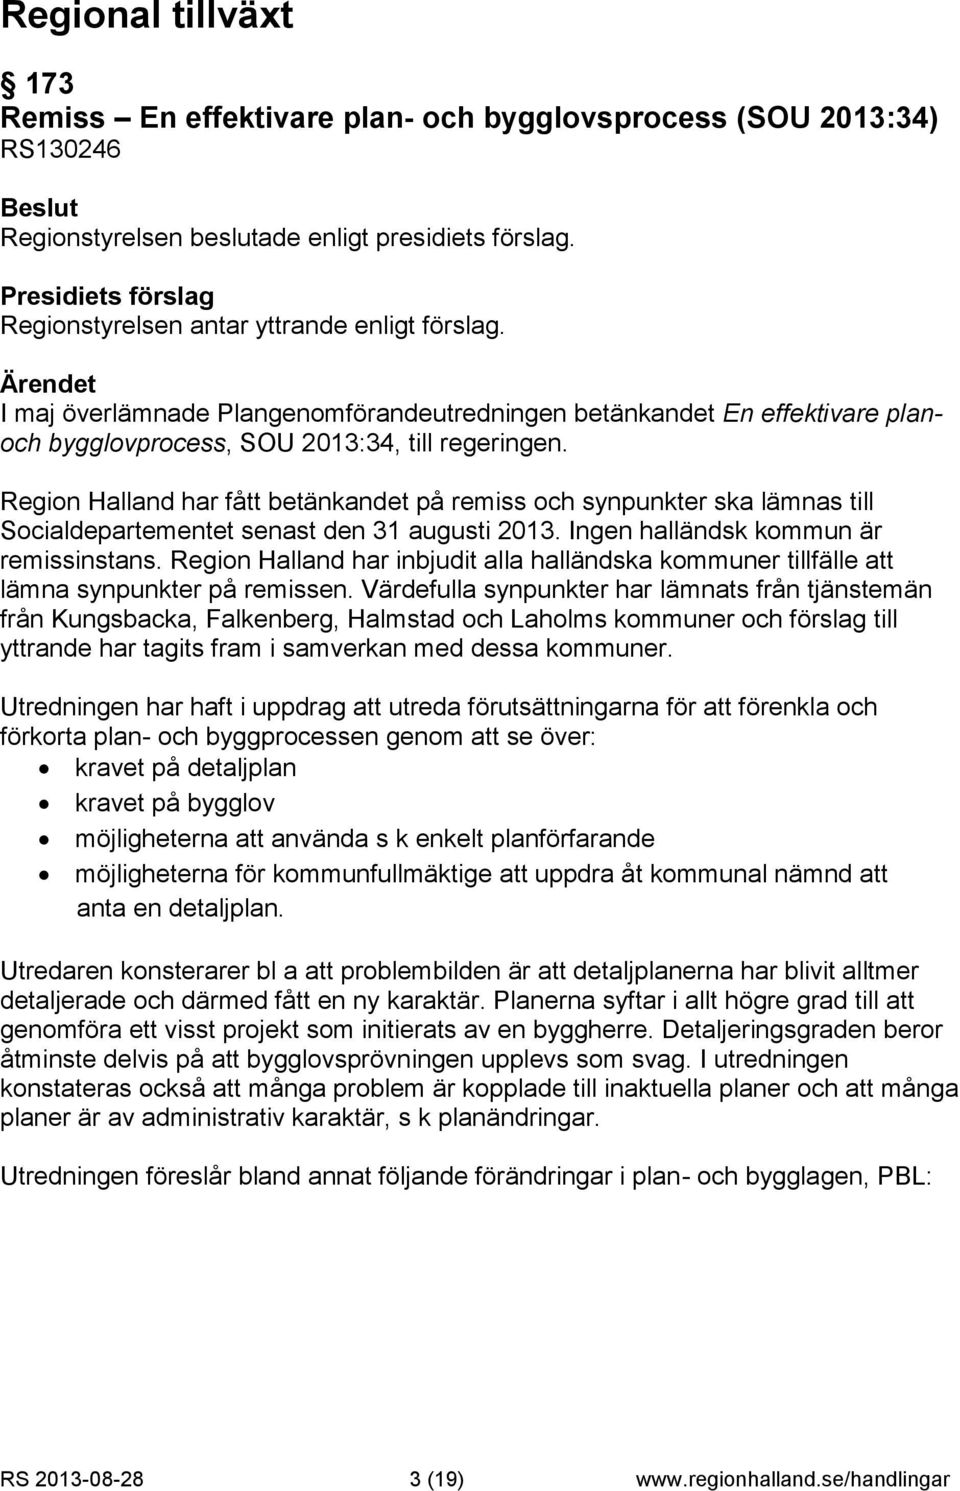 Region Halland har fått betänkandet på remiss och synpunkter ska lämnas till Socialdepartementet senast den 31 augusti 2013. Ingen halländsk kommun är remissinstans.